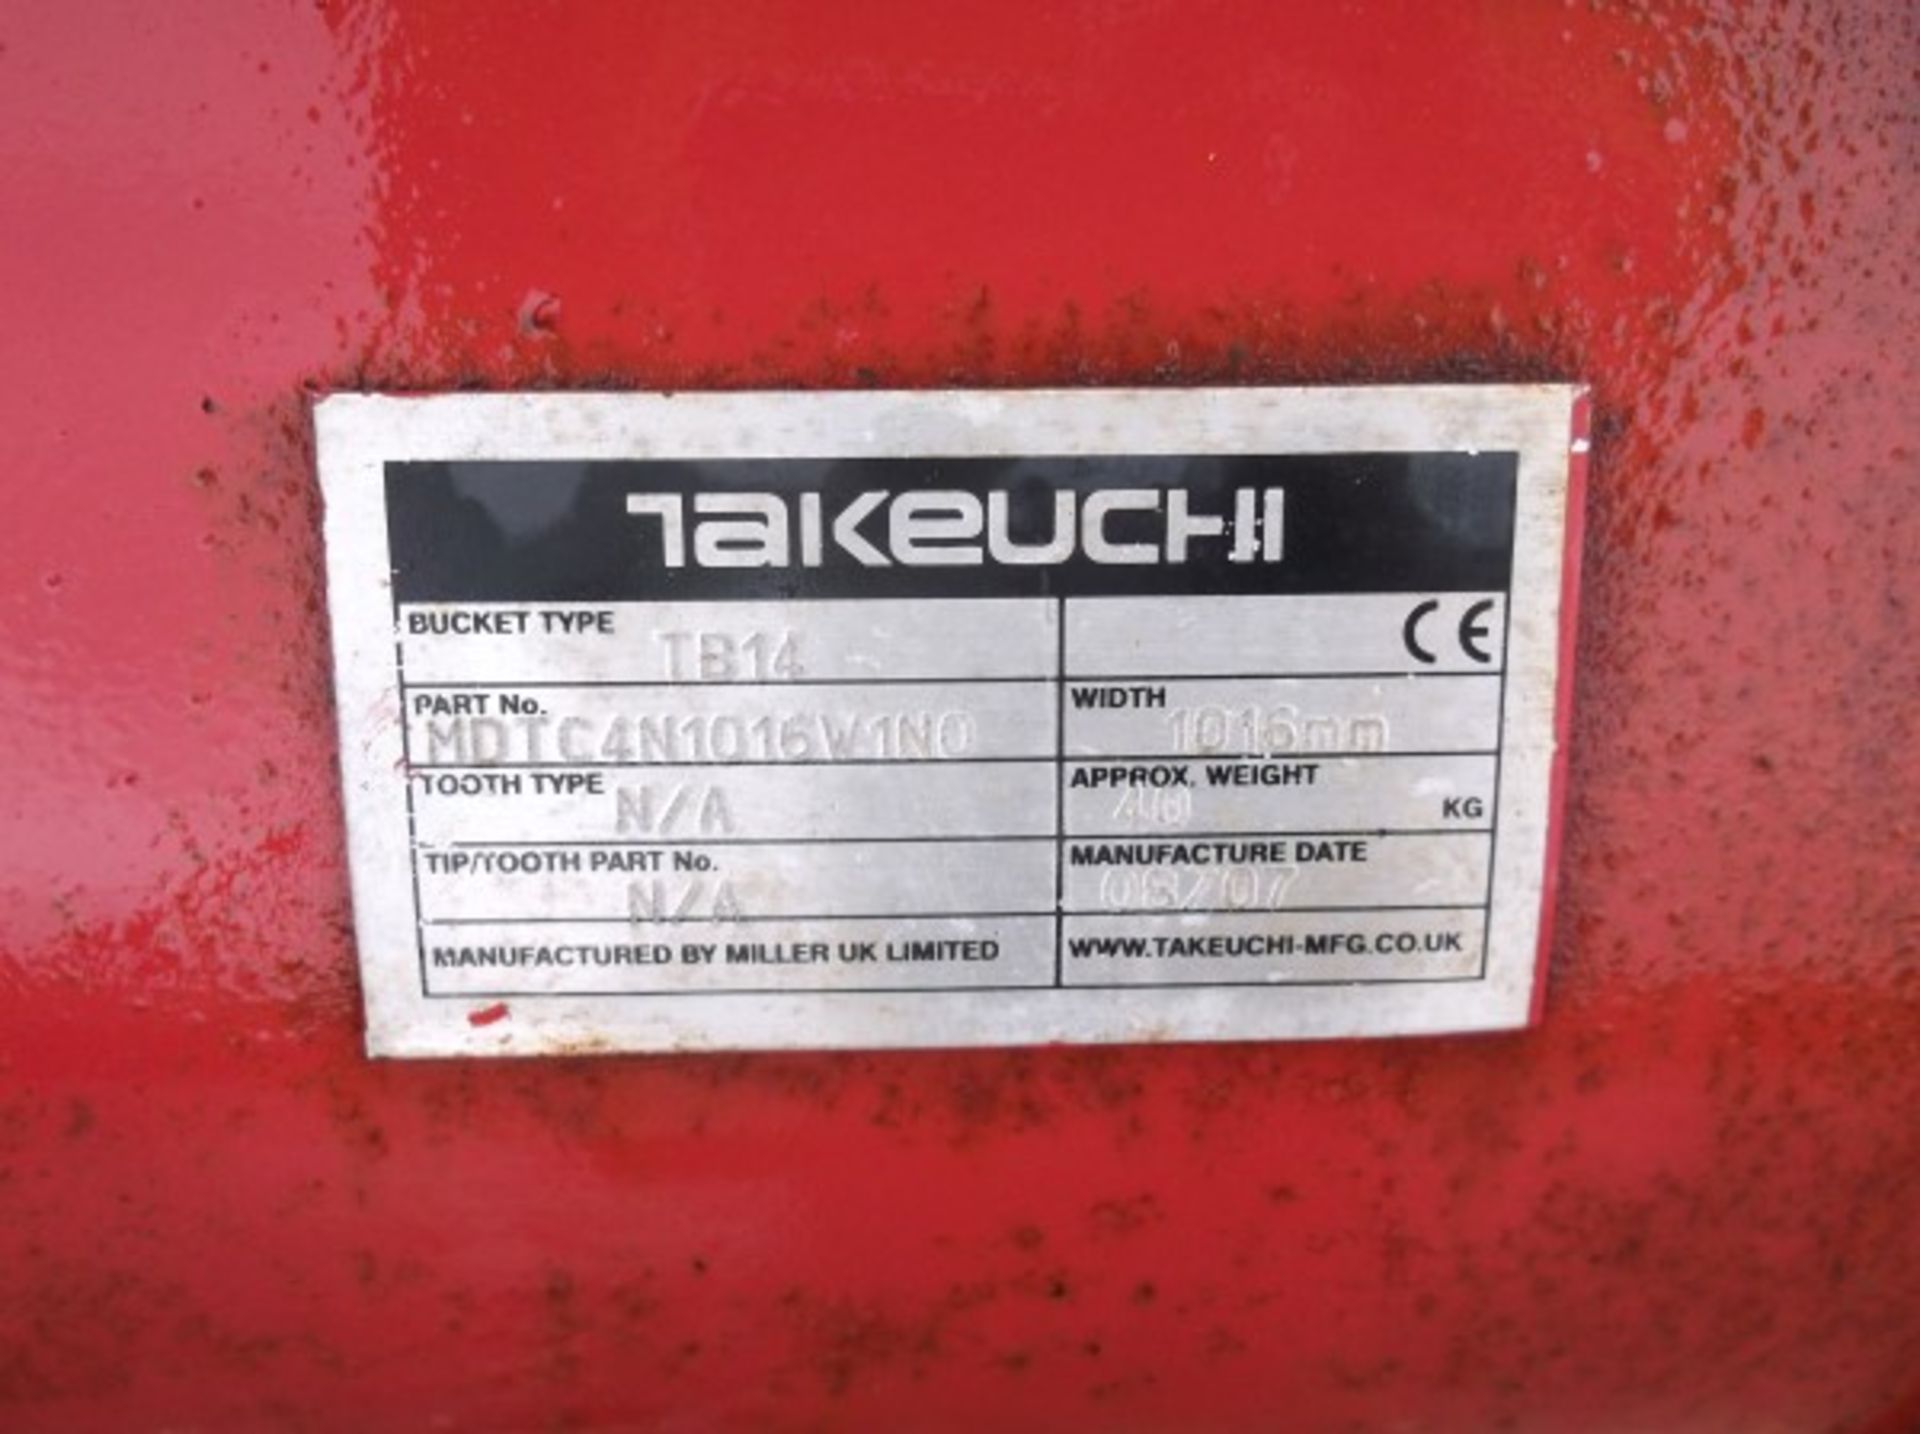 Takeuchi TB14 40"" Ditch Bucket - Bild 3 aus 3